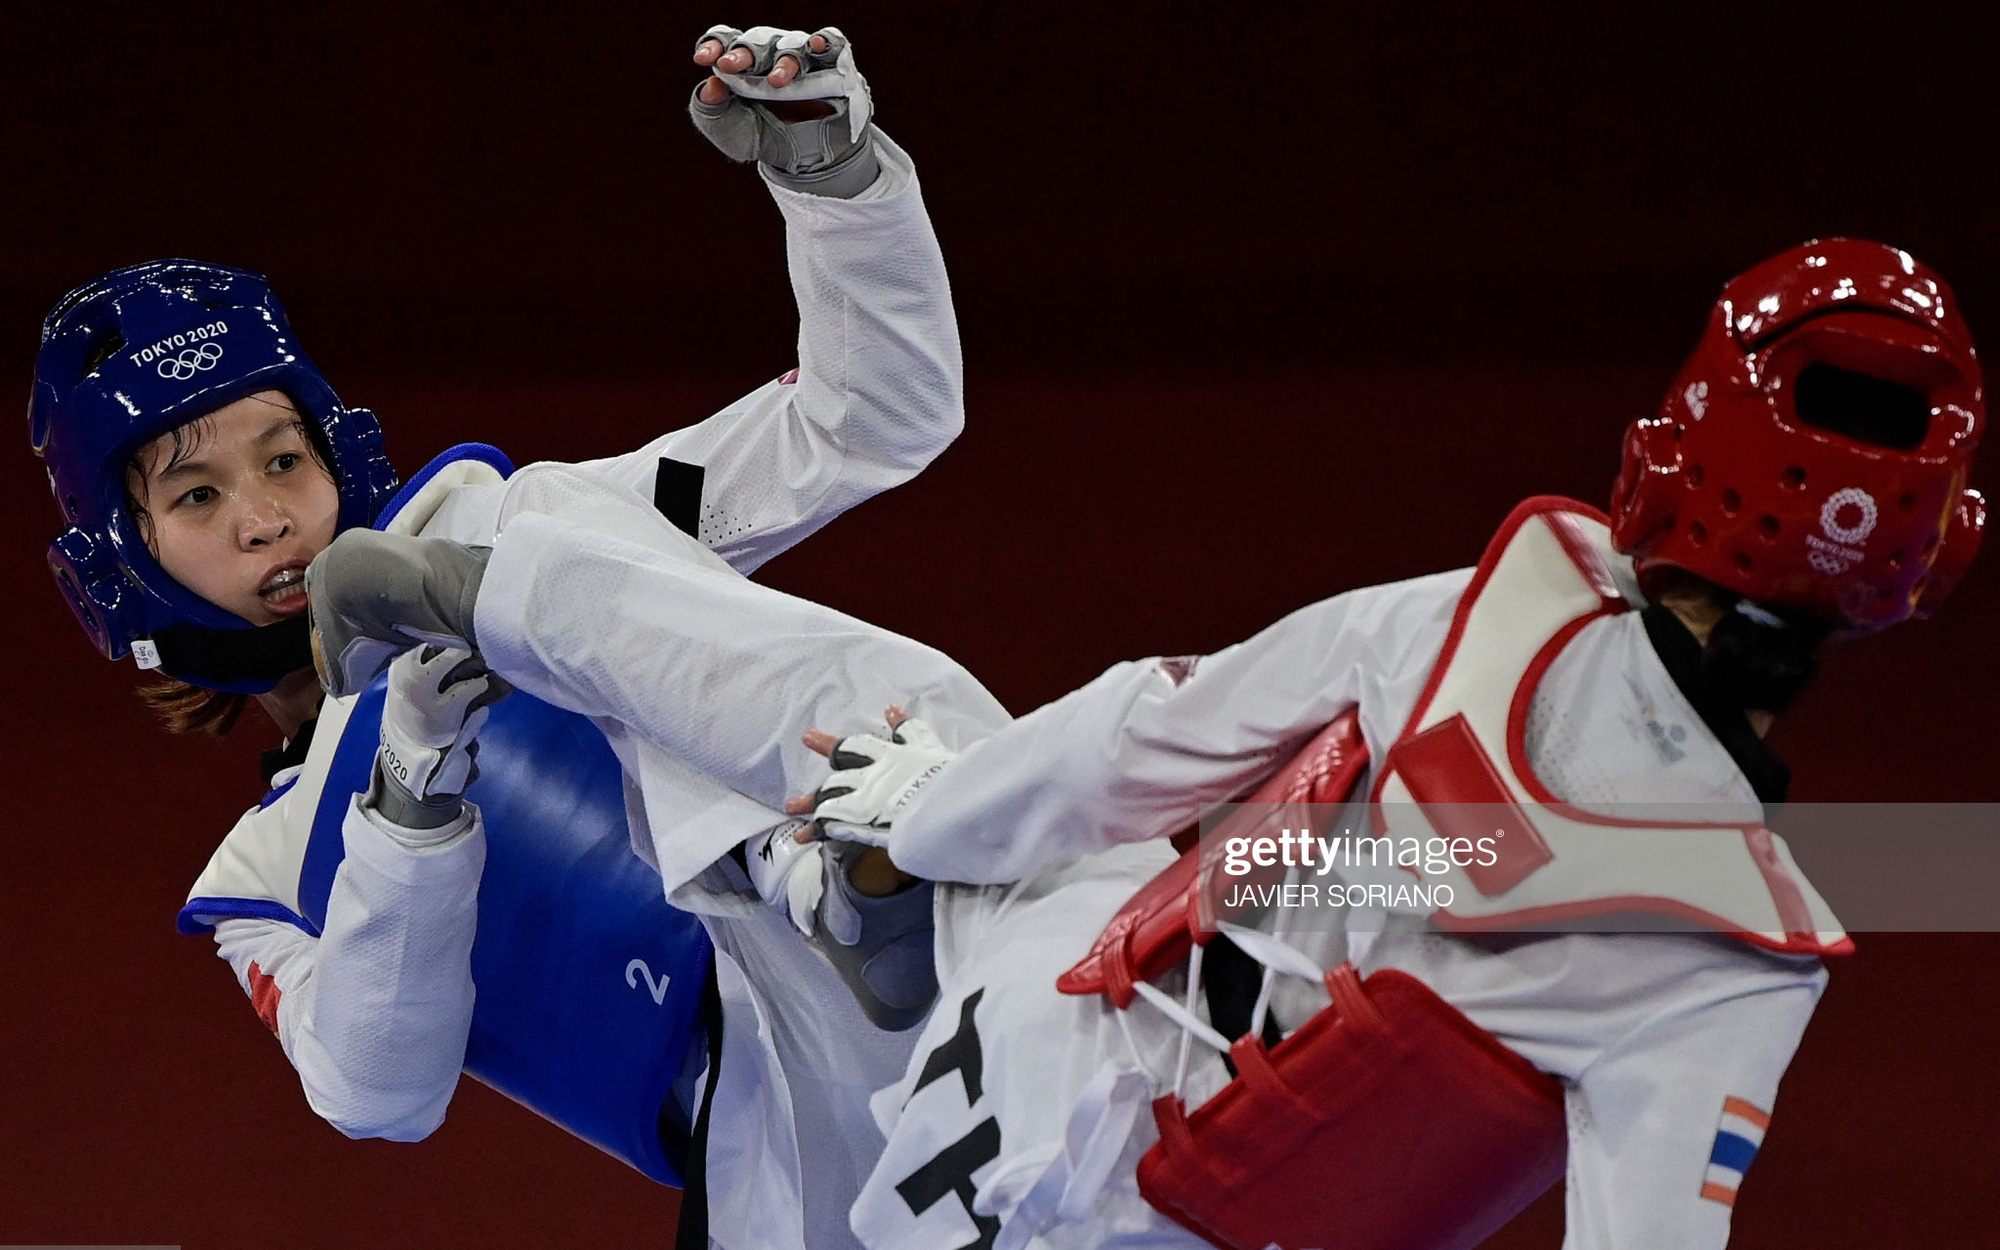 Thua võ sĩ Thái Lan, Trương Thị Kim Tuyền vẫn còn "cửa" tranh huy chương Olympic 